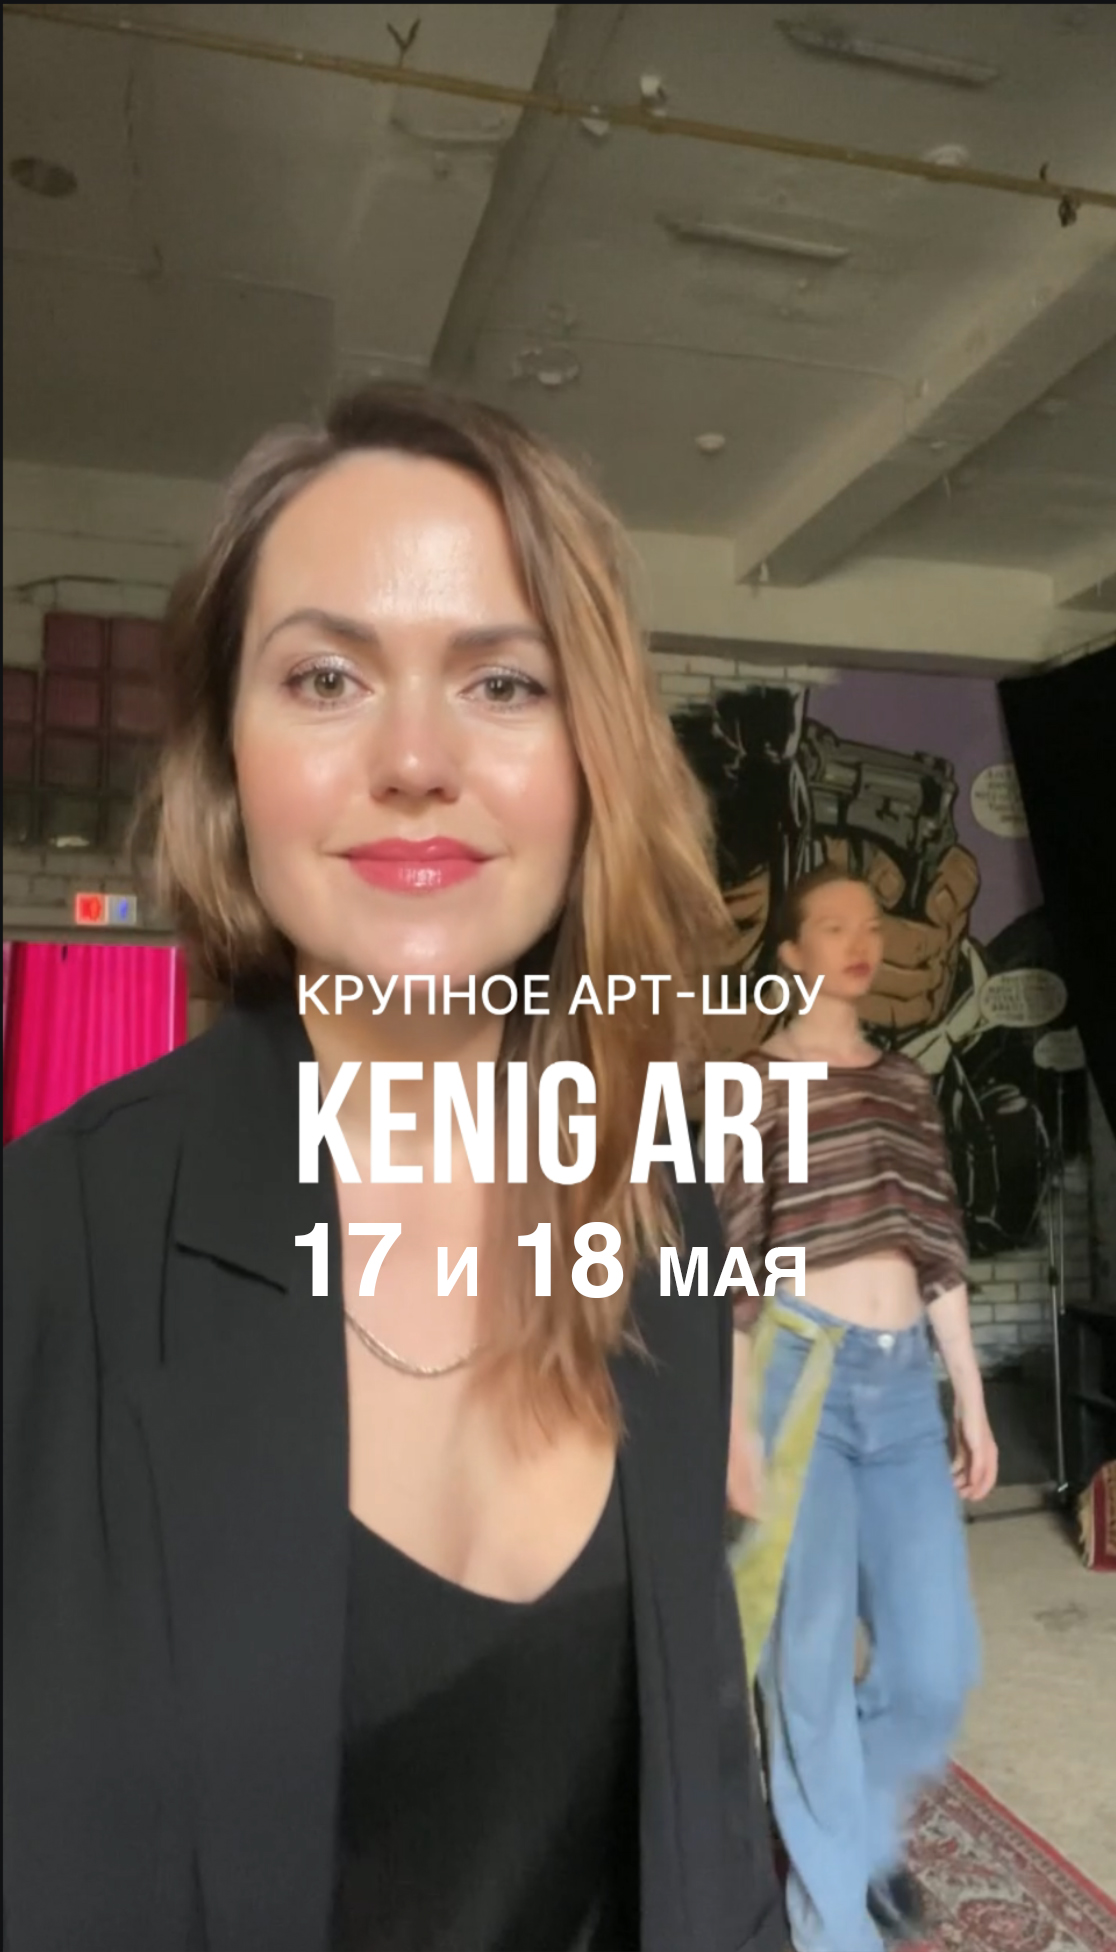 17-18 мая KENIG ART/ Ночь музеев в арт-пространстве FABRIK, успейте увидеть крупное арт-шоу!